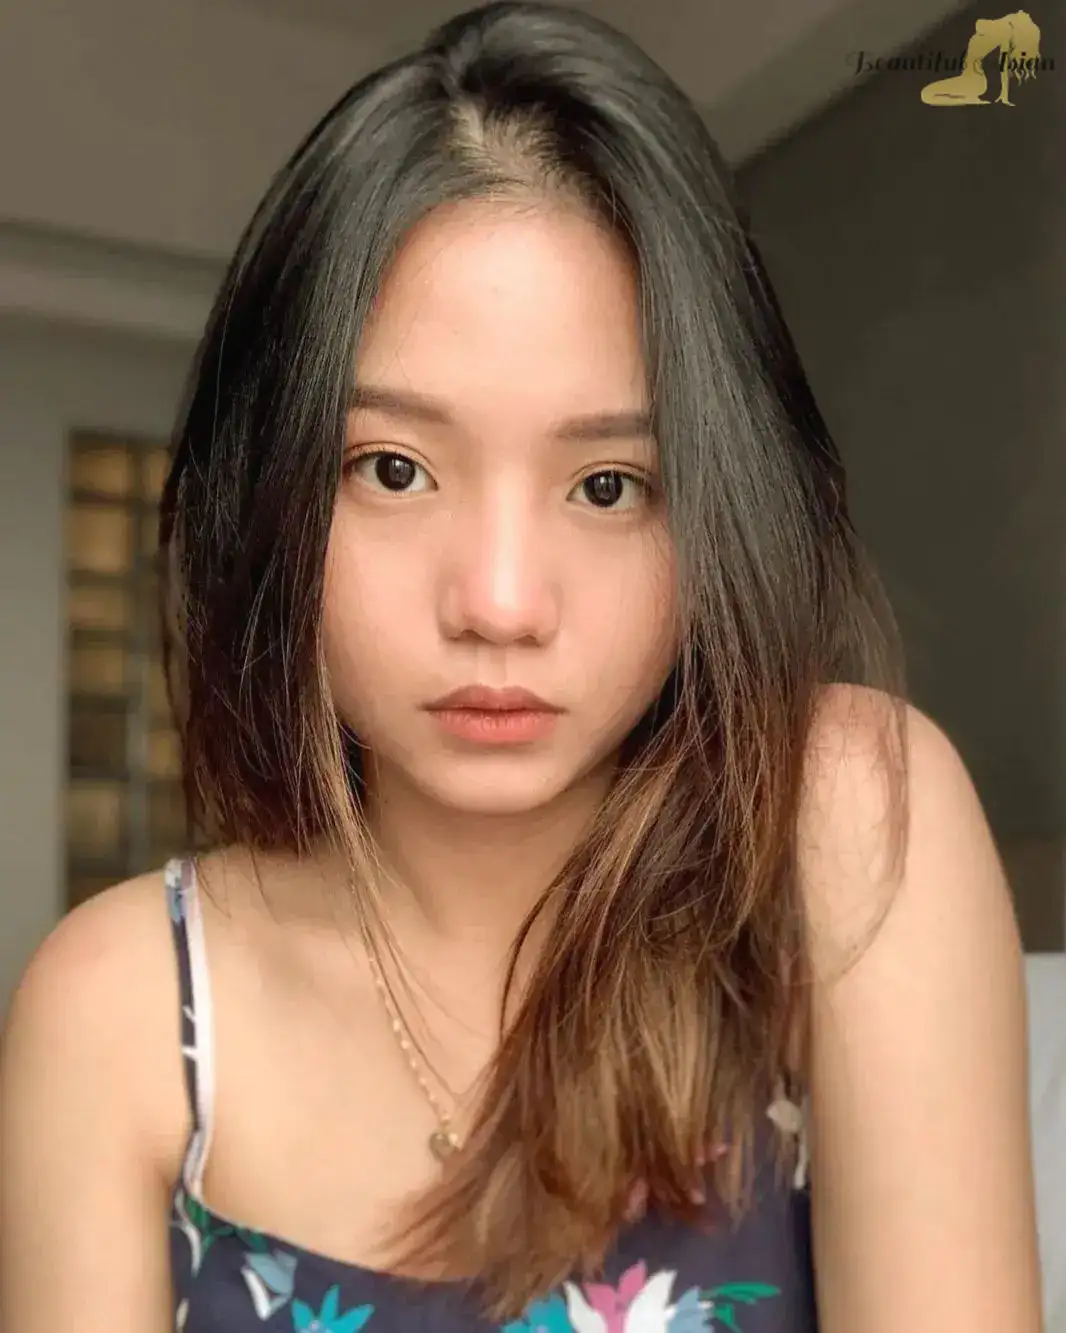 splendid girl from China